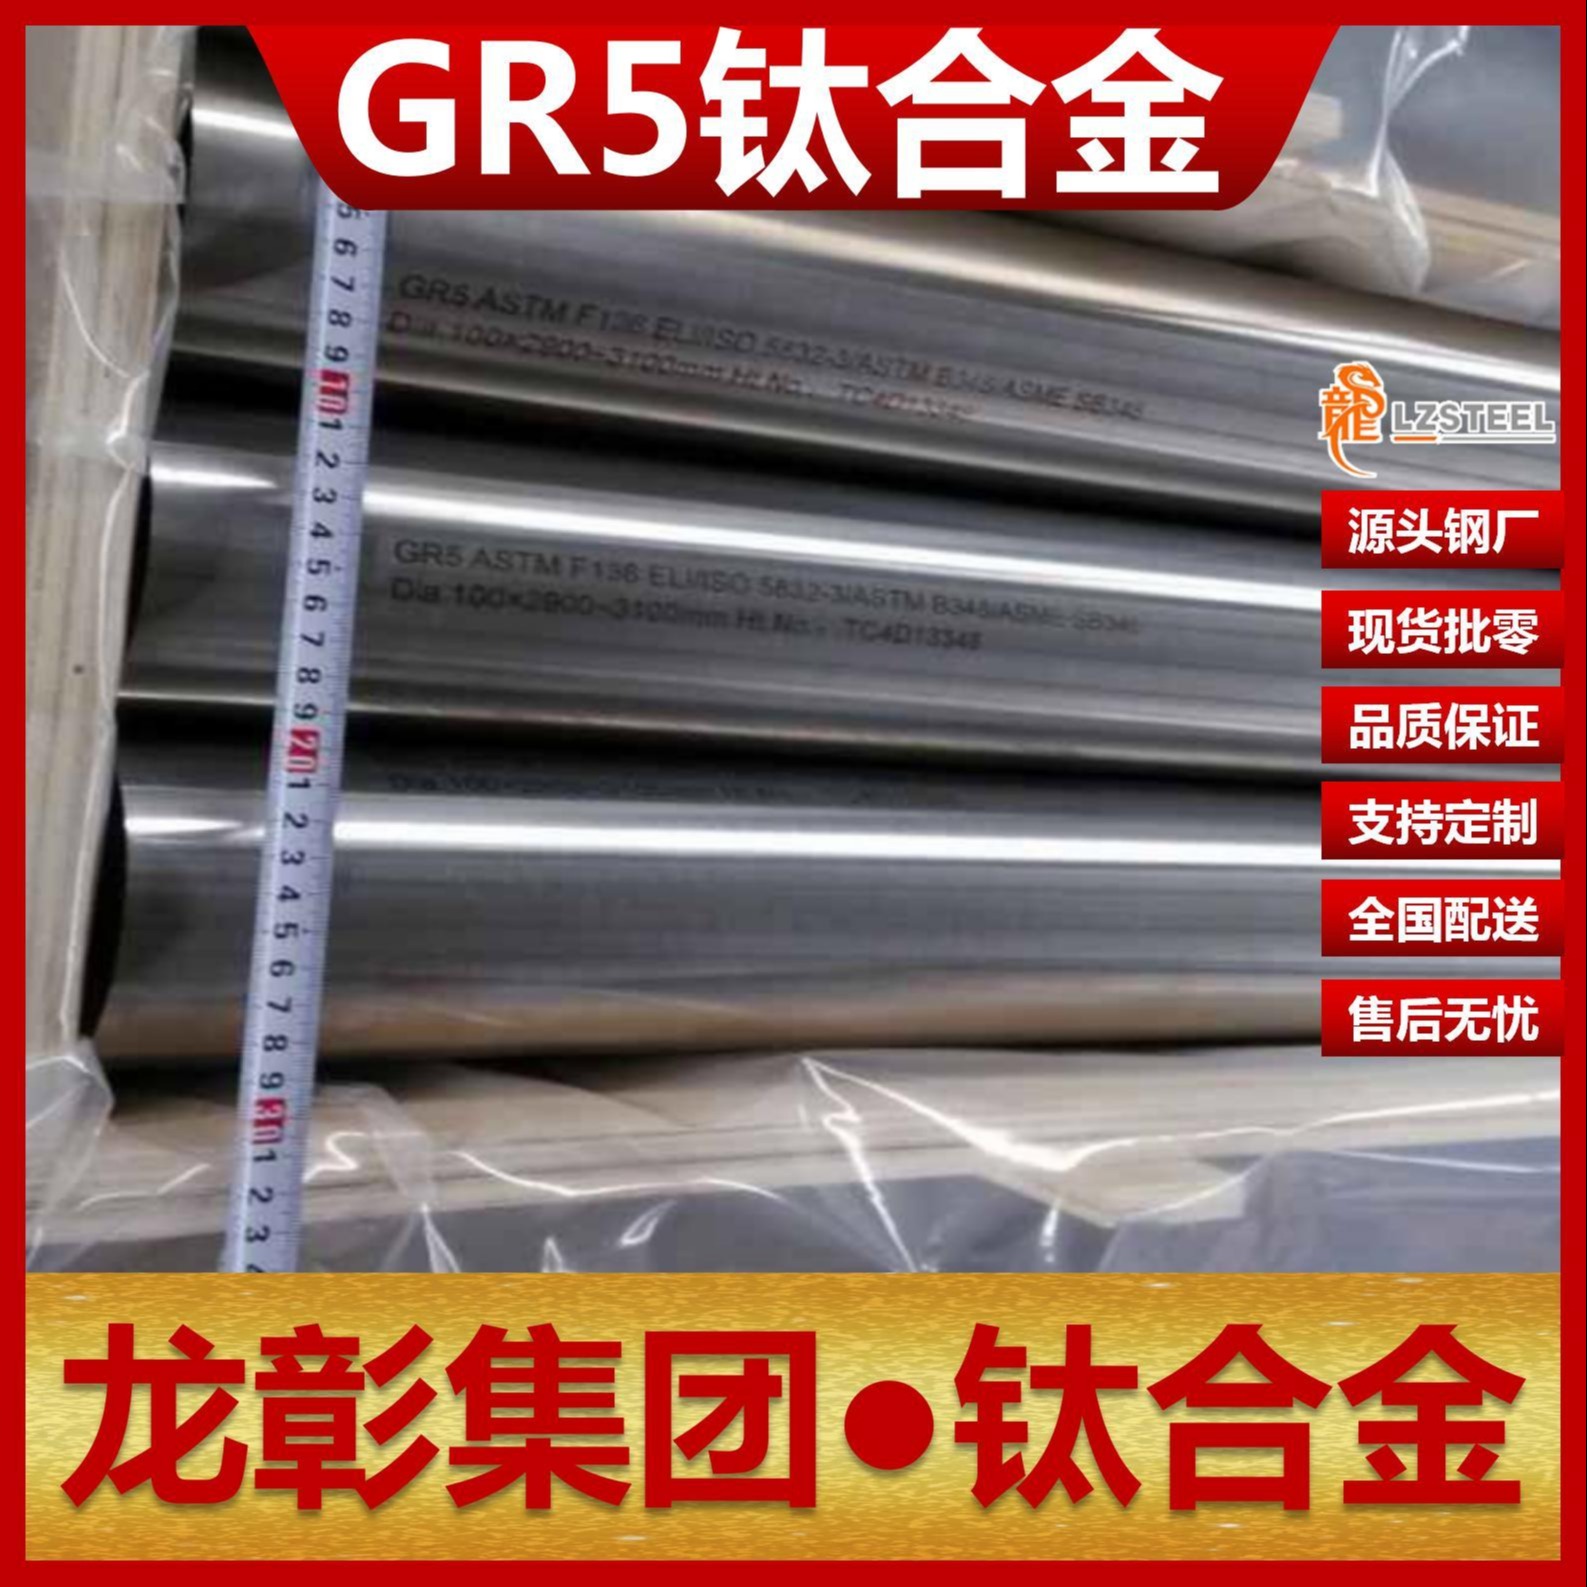 龙彰集团GR5钛合金现货批零 GR5钛合金高品质钛板棒管可定制